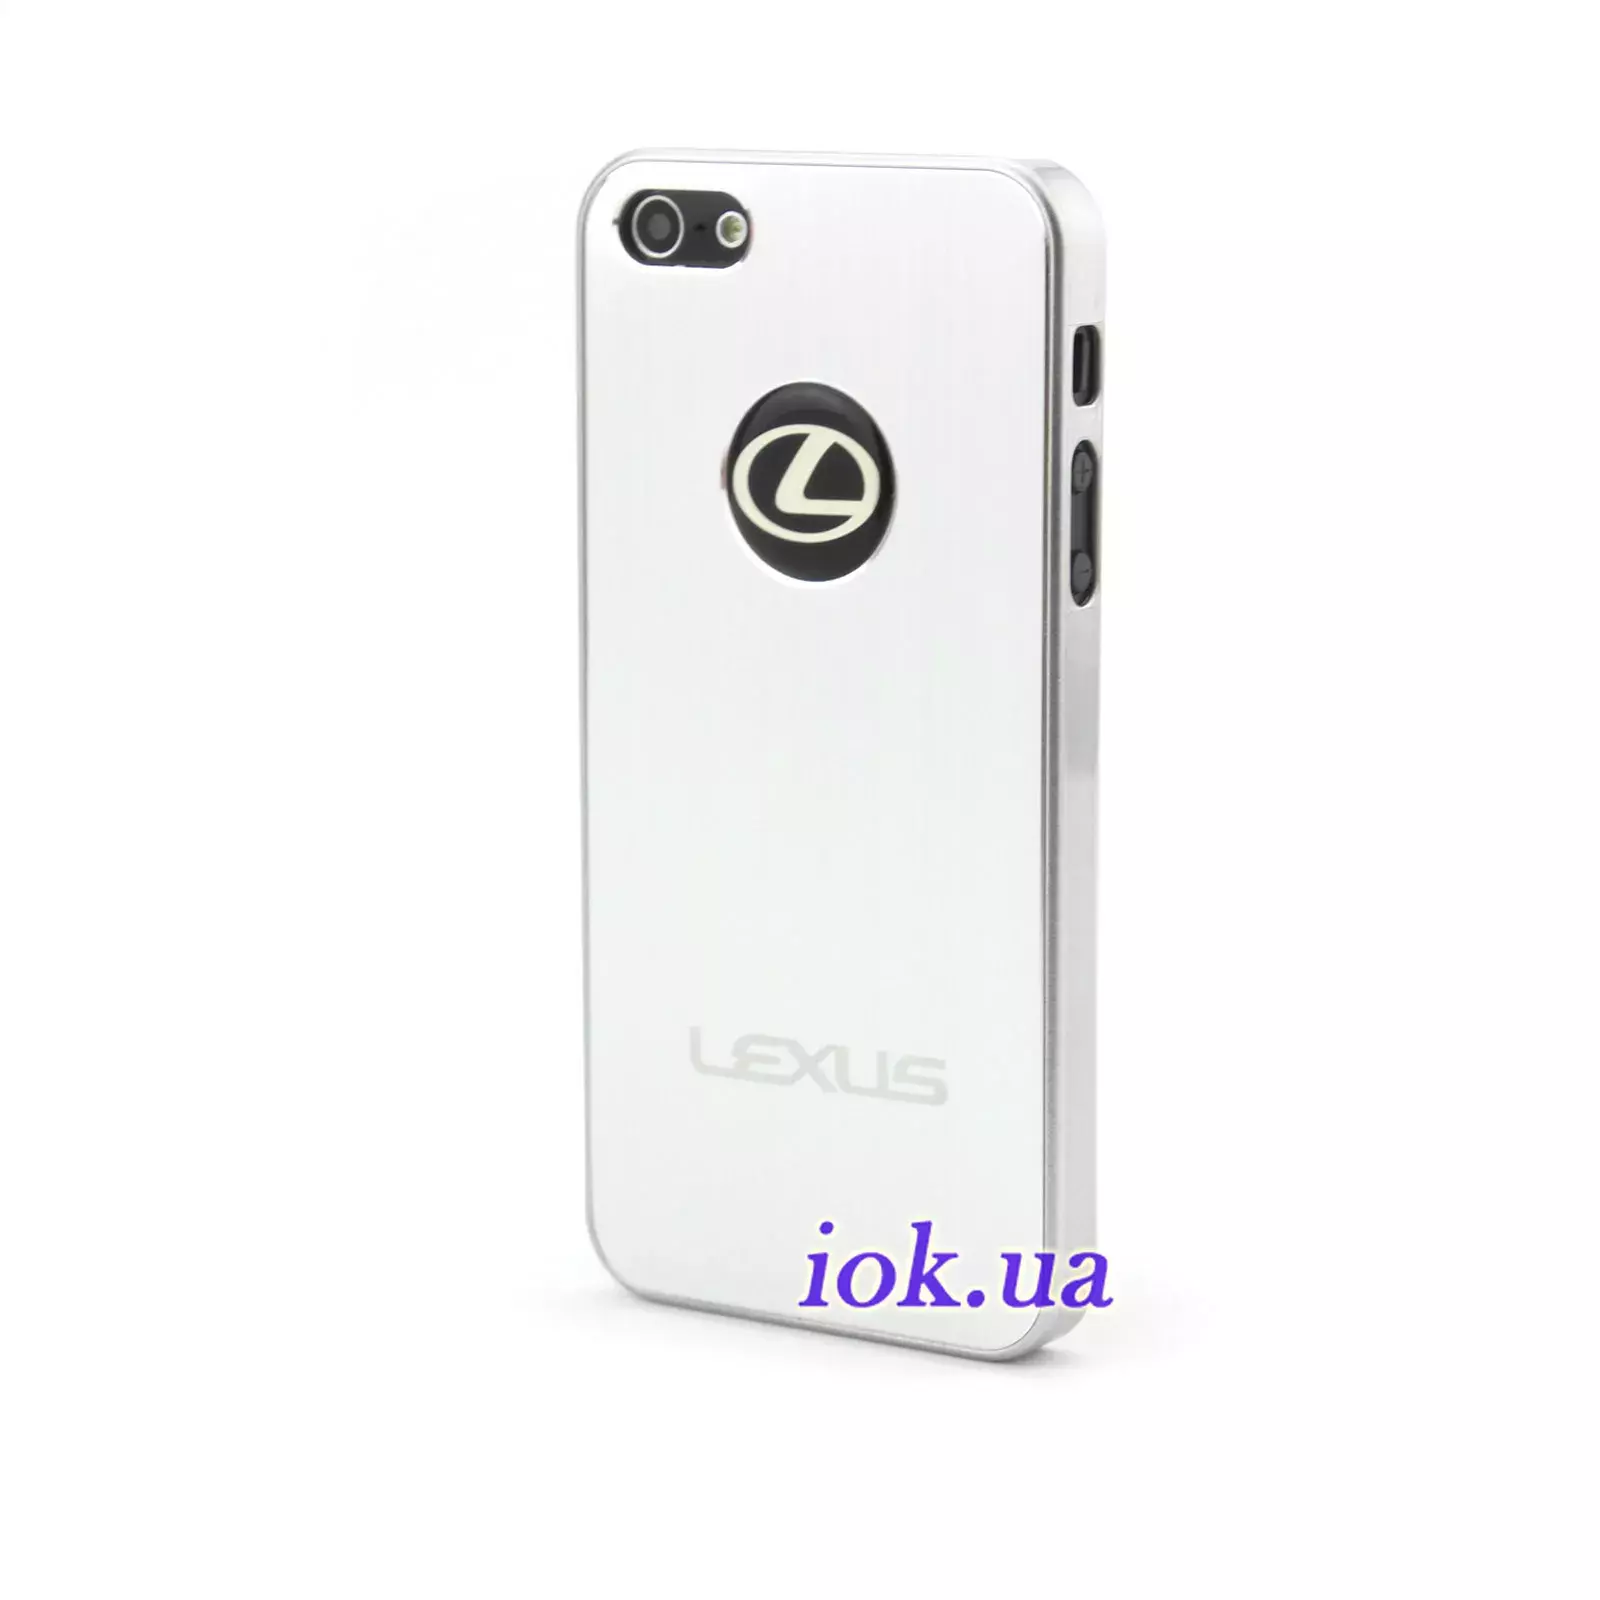 Чехол на iPhone 5 - Lexus, металлик